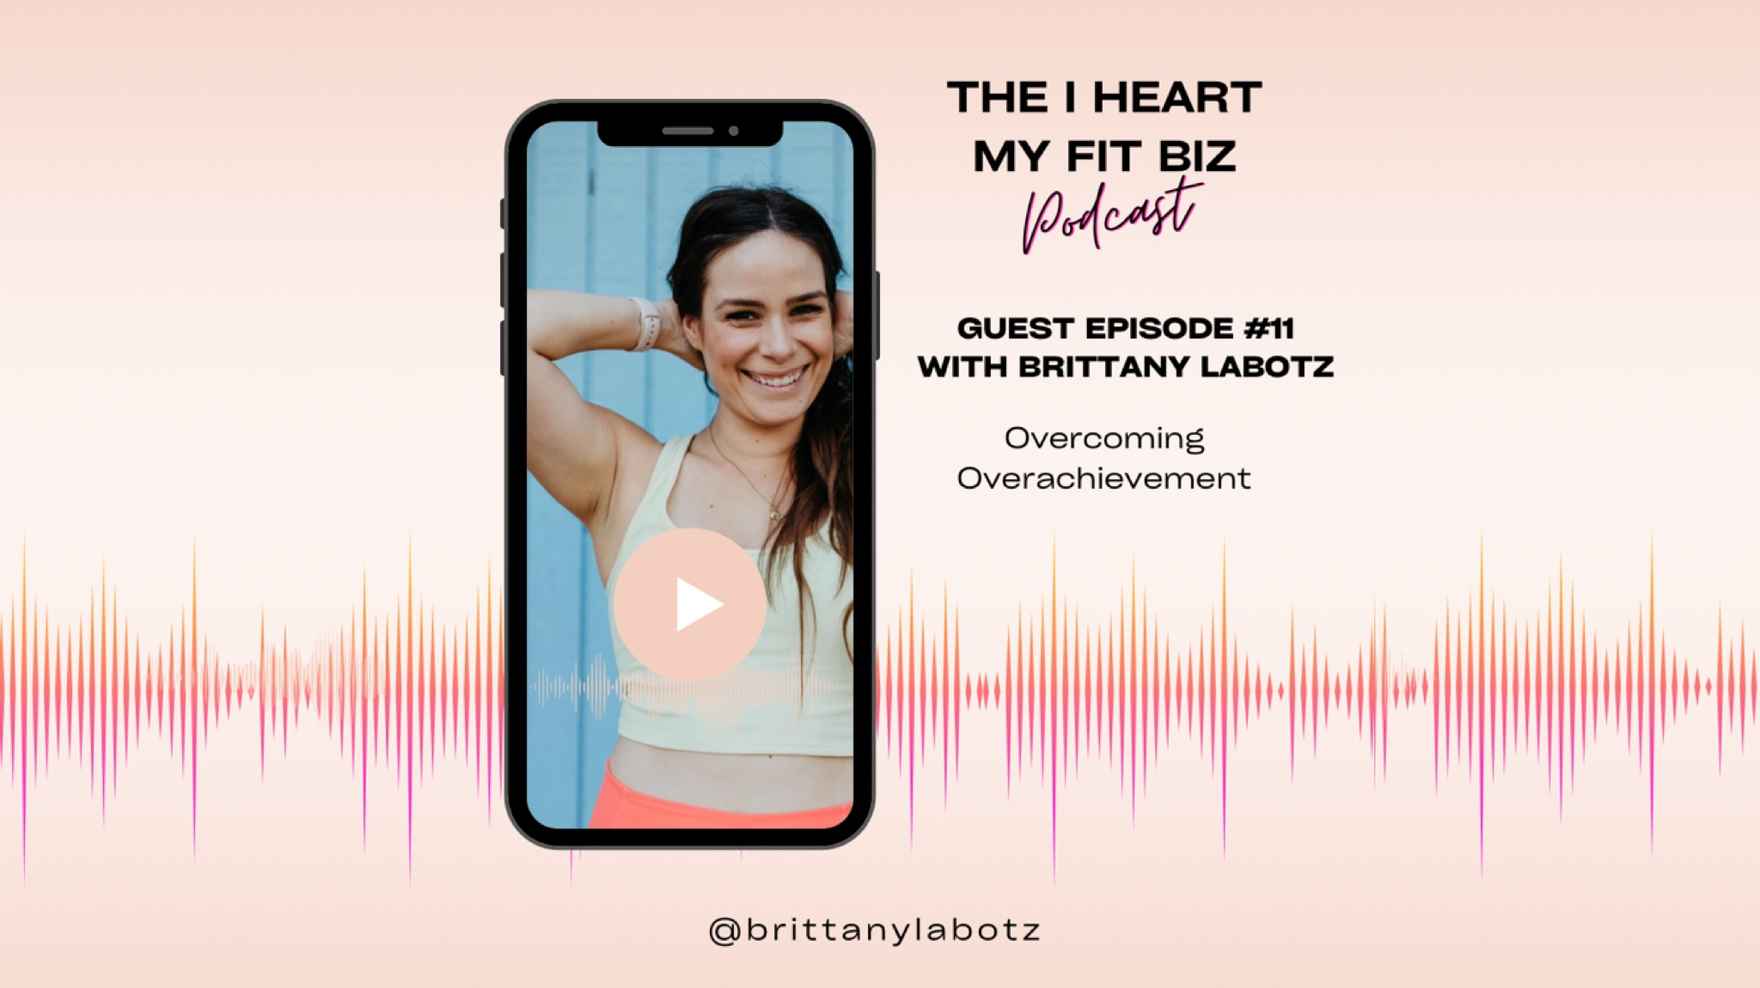 Guest Episode #11 - Brittany Labotz